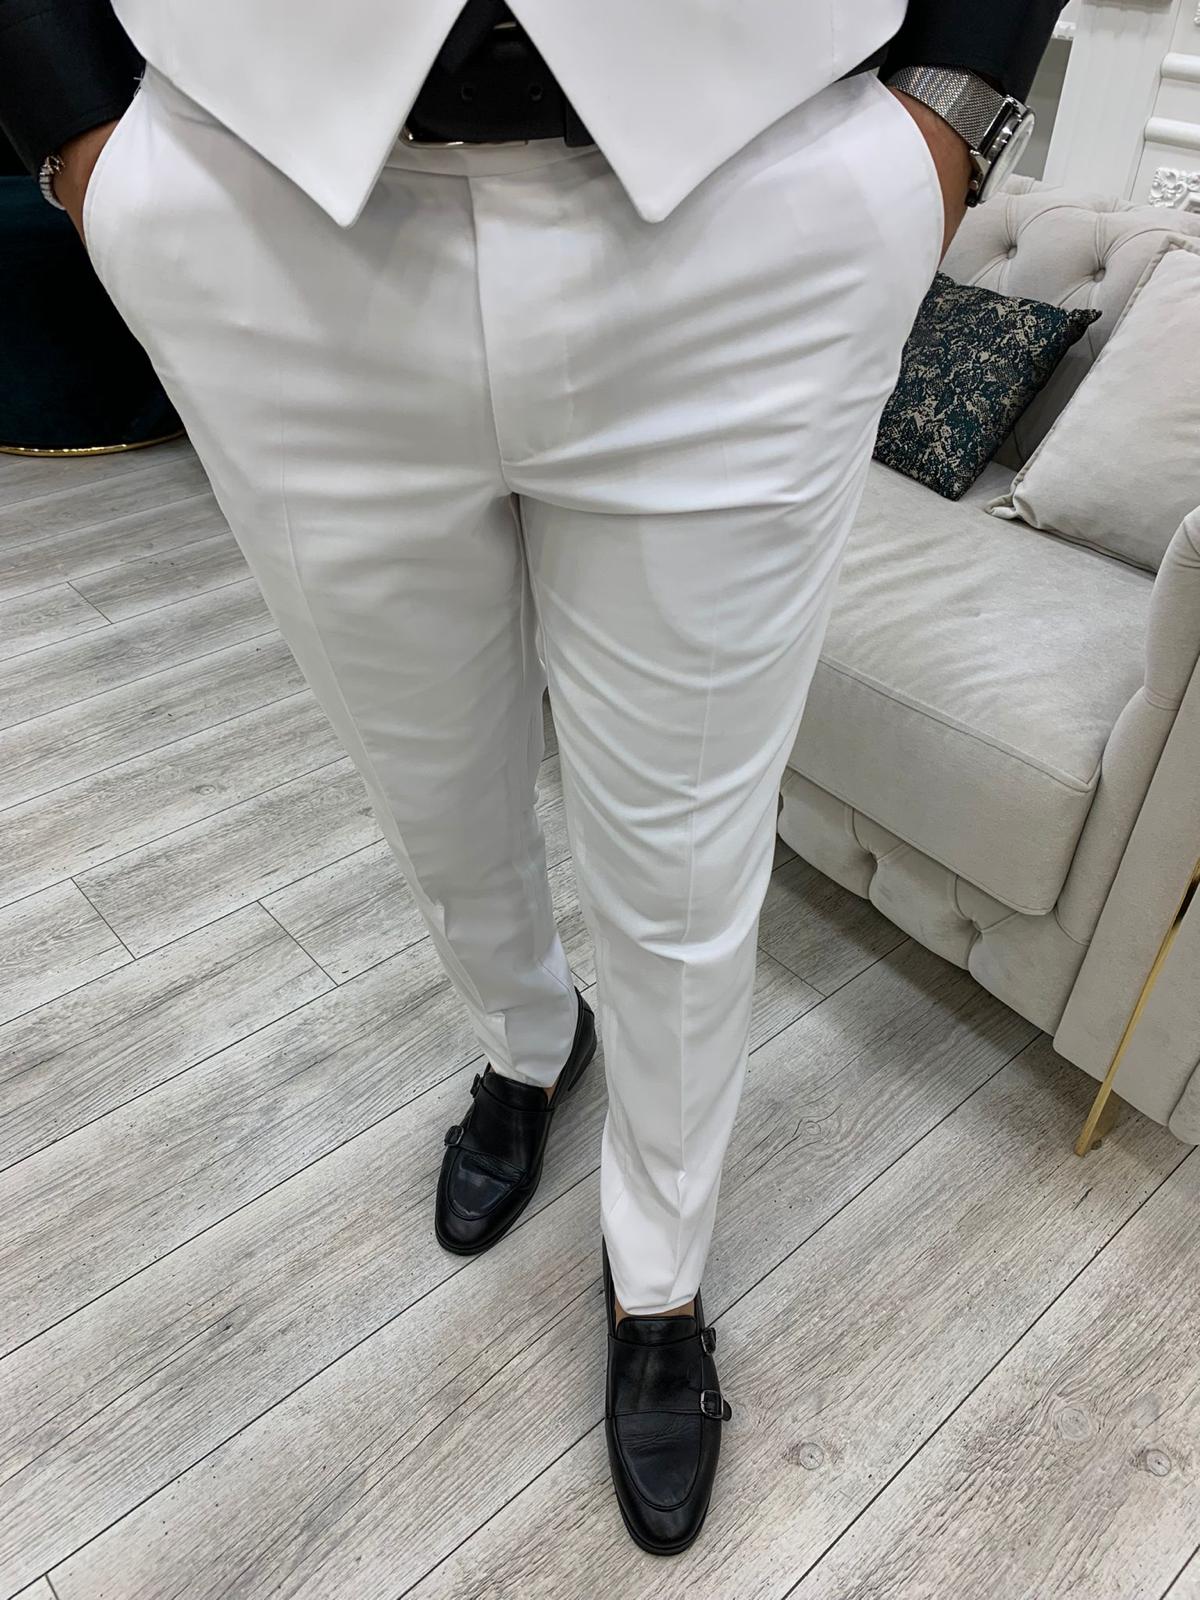 Vince White Slim Fit Peak Lapel Suit